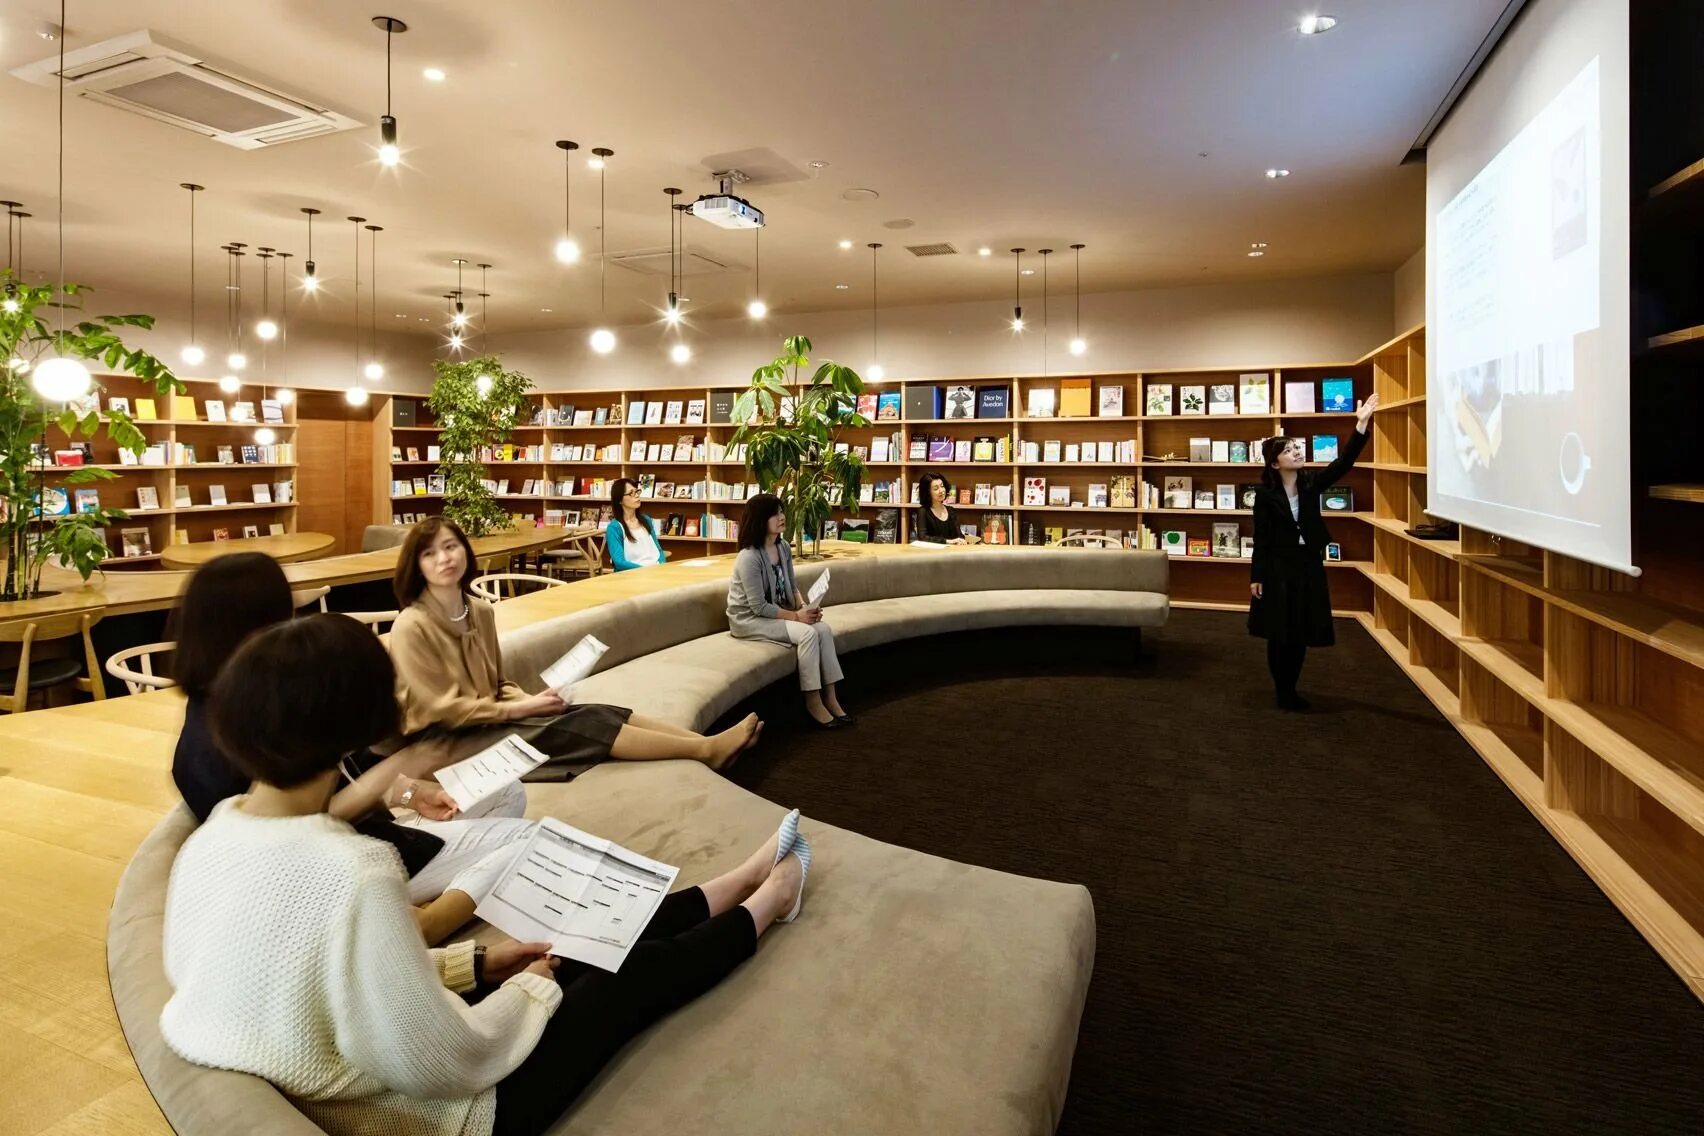 Compile library. Библиотека Японии читальный зал. Интерьер образовательных учреждений в Японии книгохранилище. Современная библиотека. Интерьер читального зала.